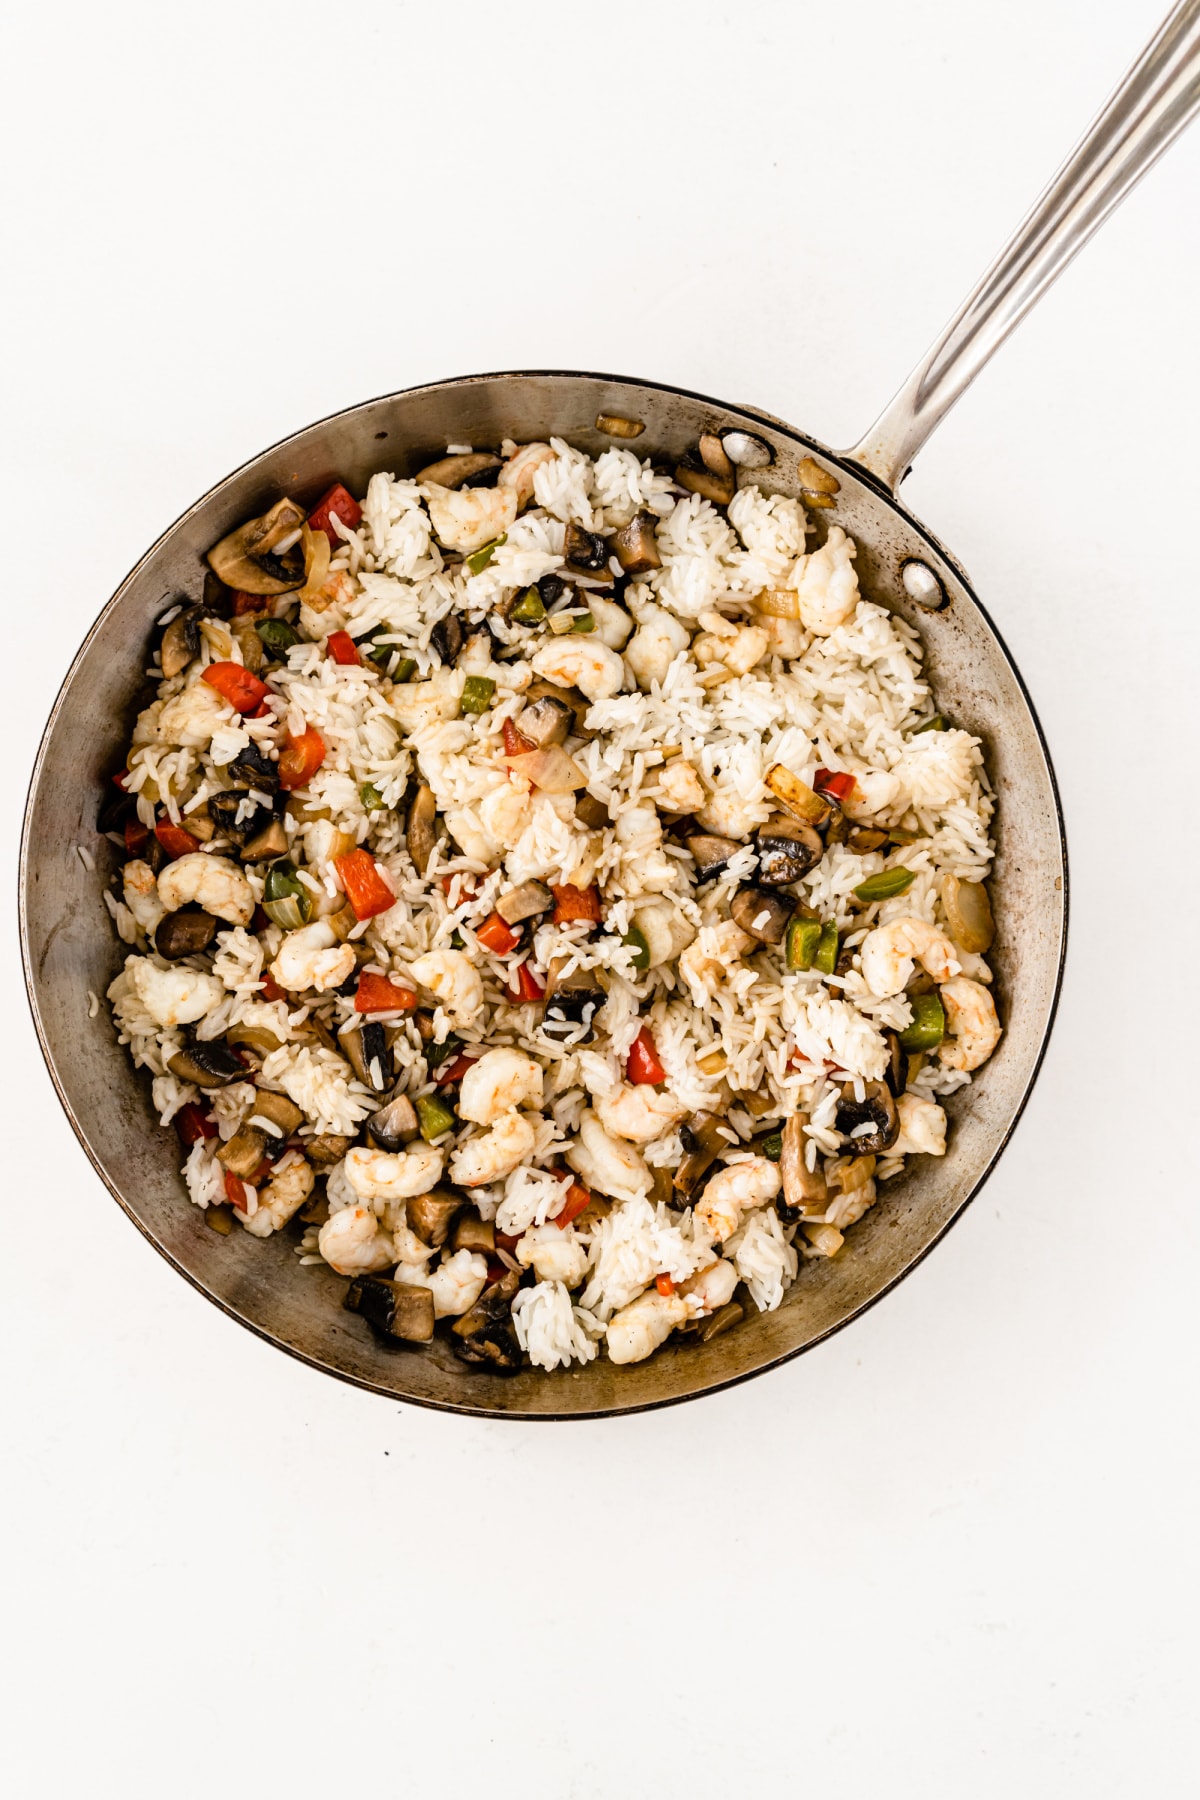 Shrimp, veggies and rice in pan